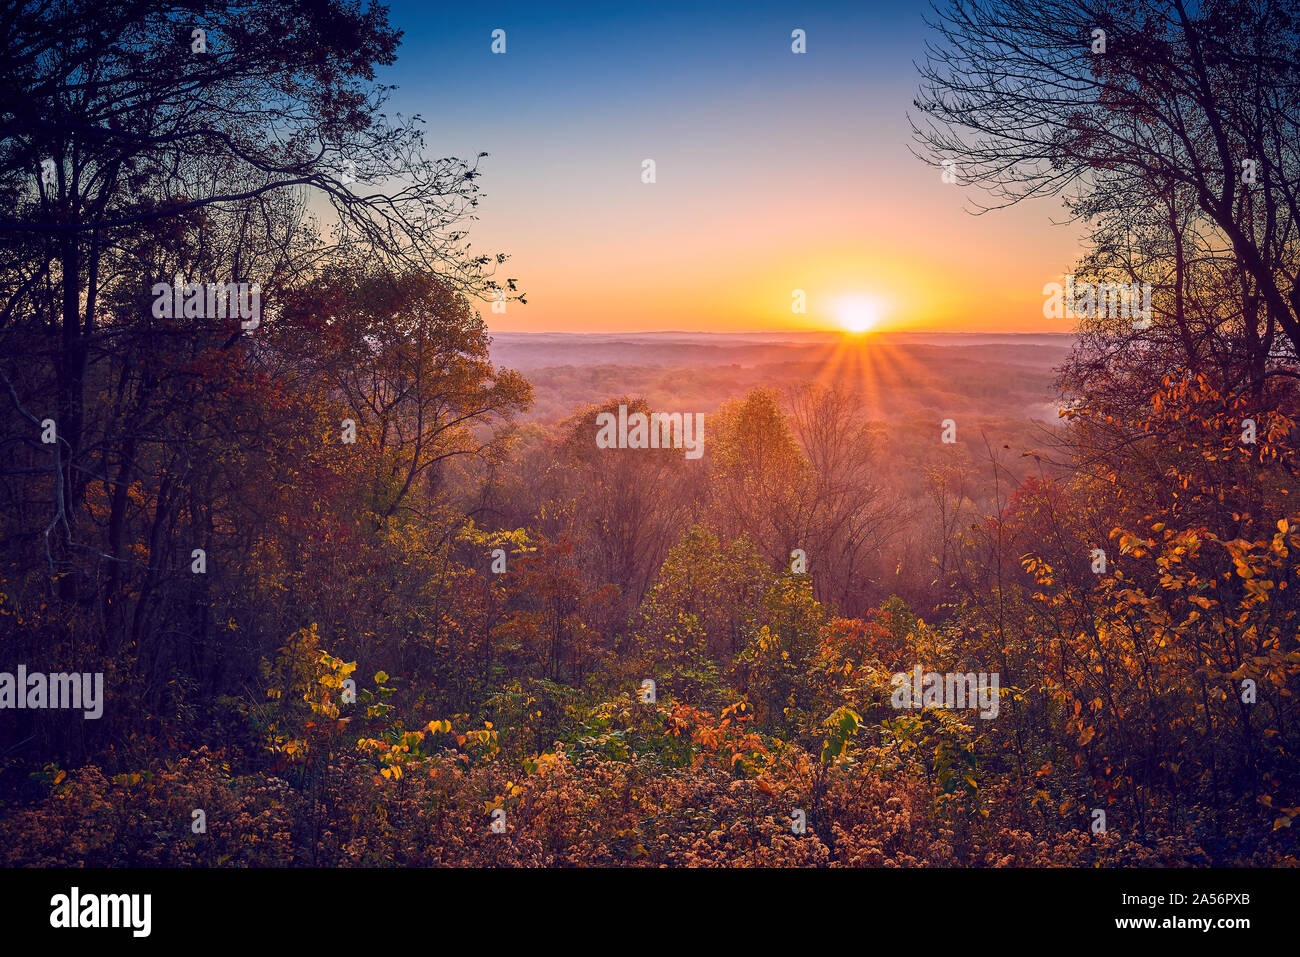 Sunrise With Fall Foliage. Stock Photo